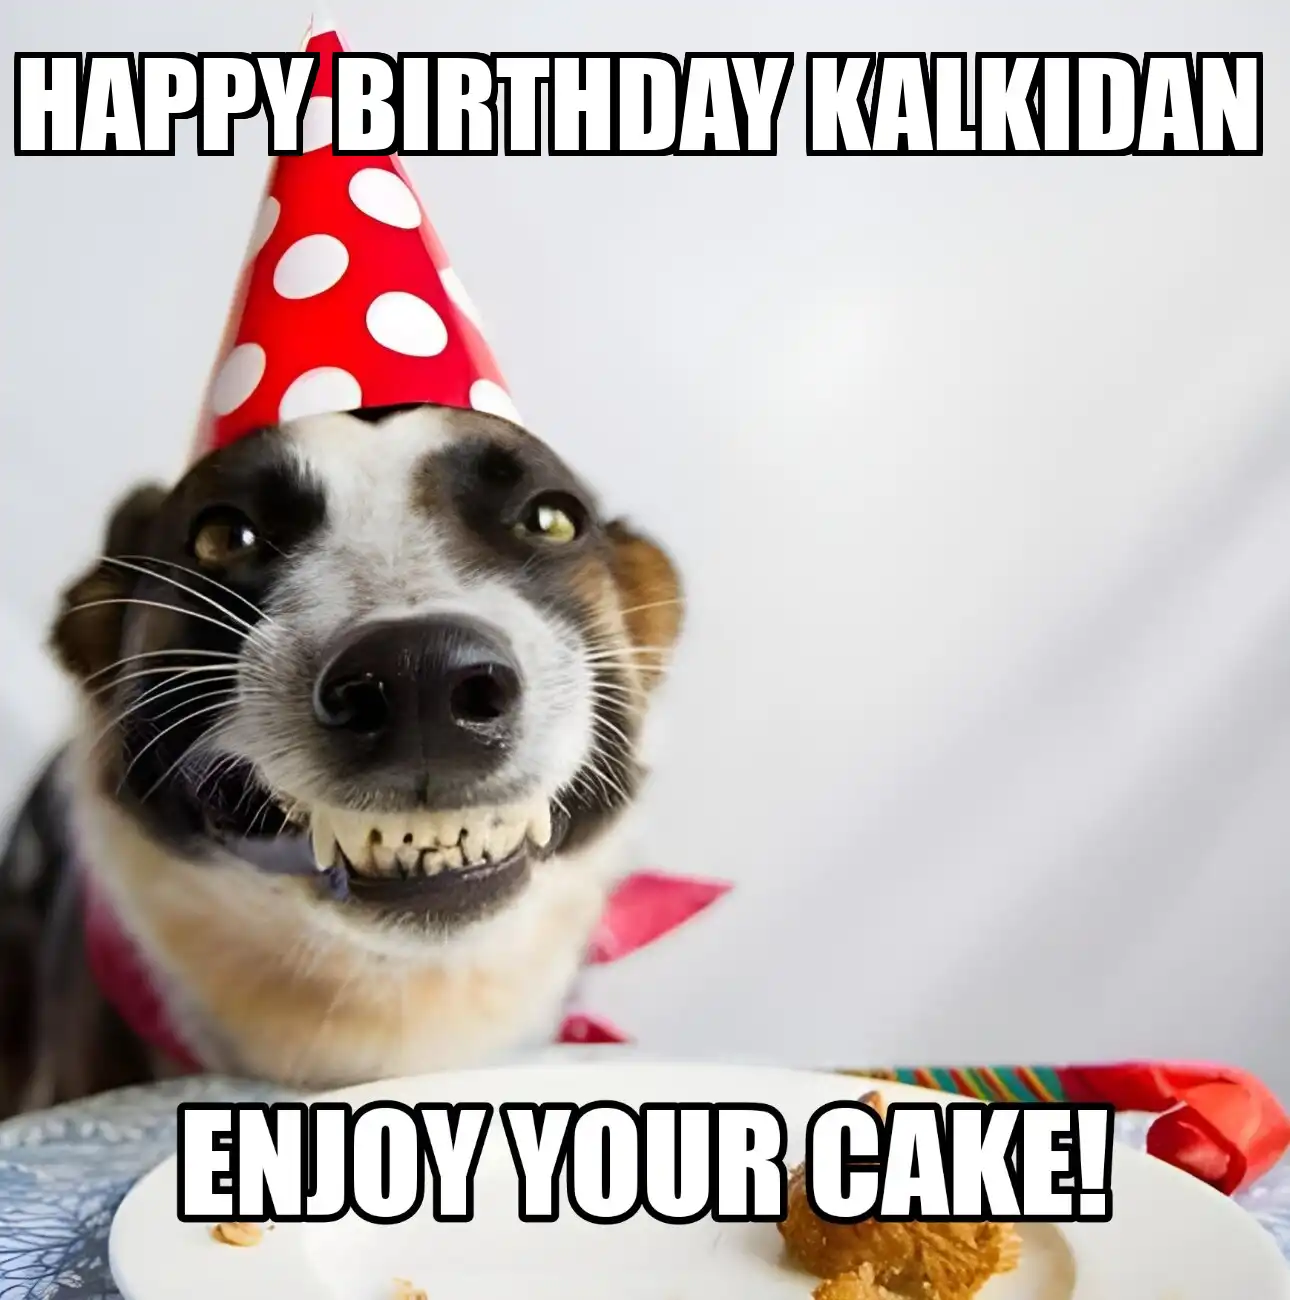 Happy Birthday Kalkidan Enjoy Your Cake Dog Meme